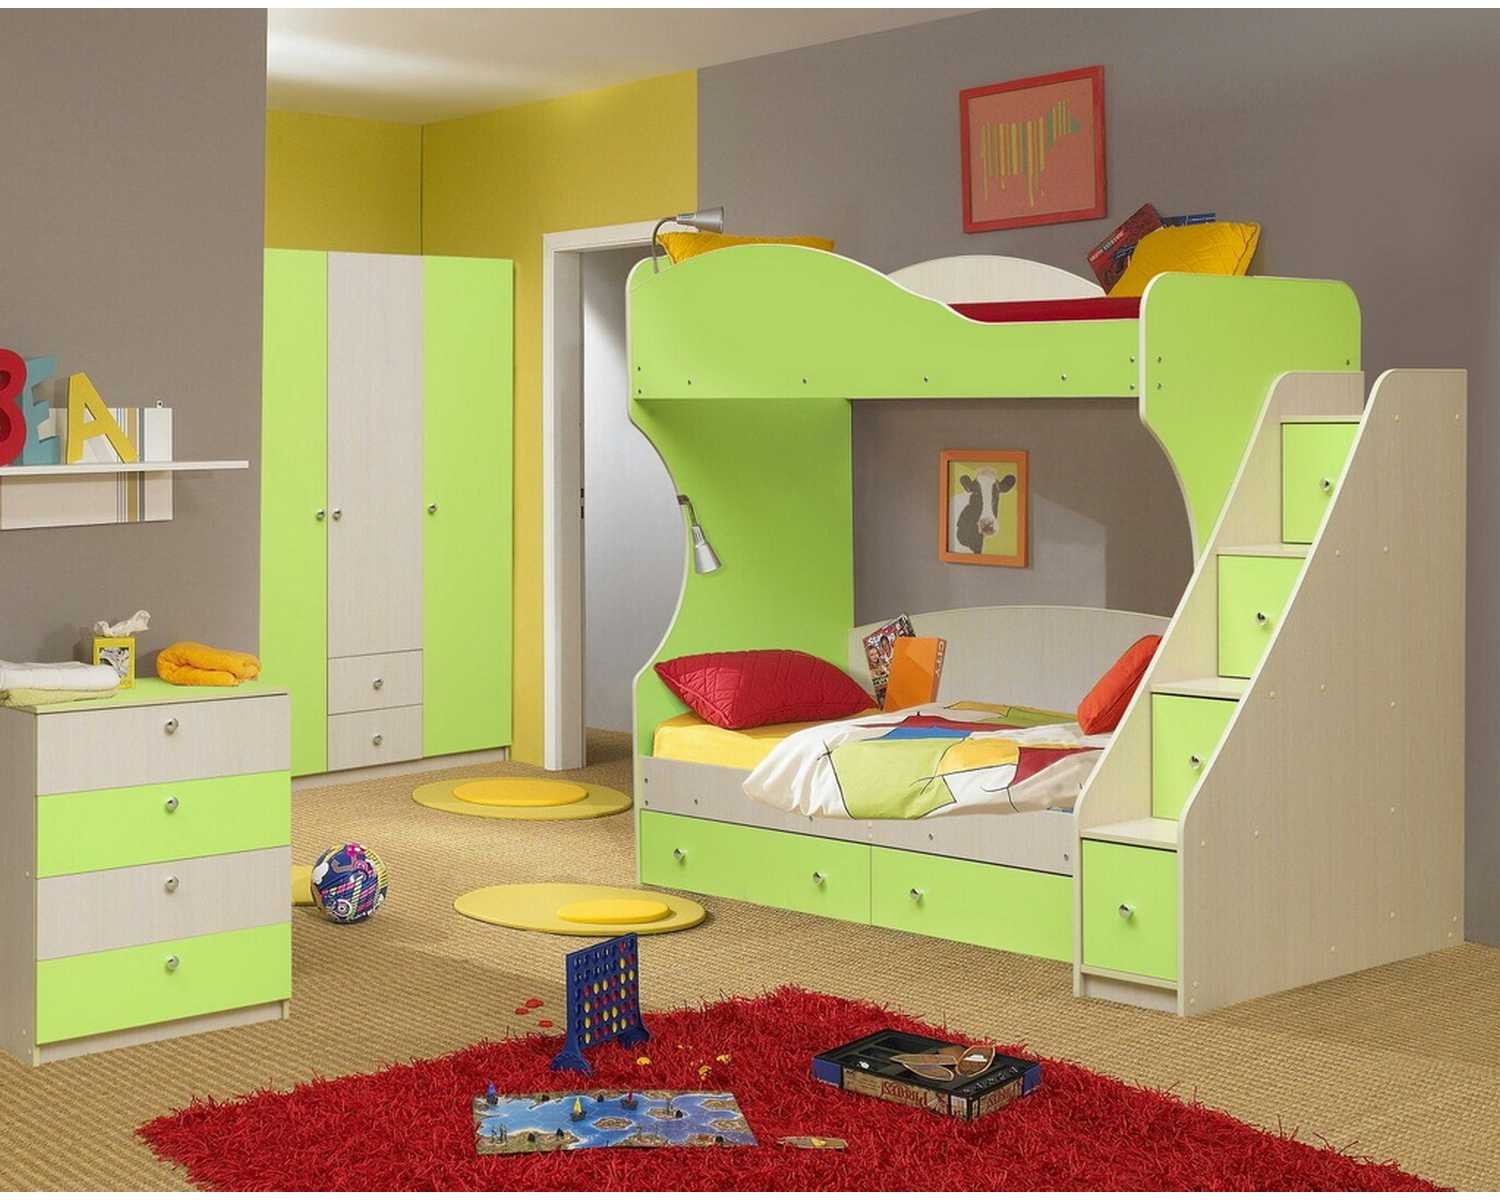 Мебель для детской комнаты для двоих. Детские комнаты мебель. Детский спальный гарнитур. Детские комнаты с двухъярусными кроватями. Мебель для детских комнат.